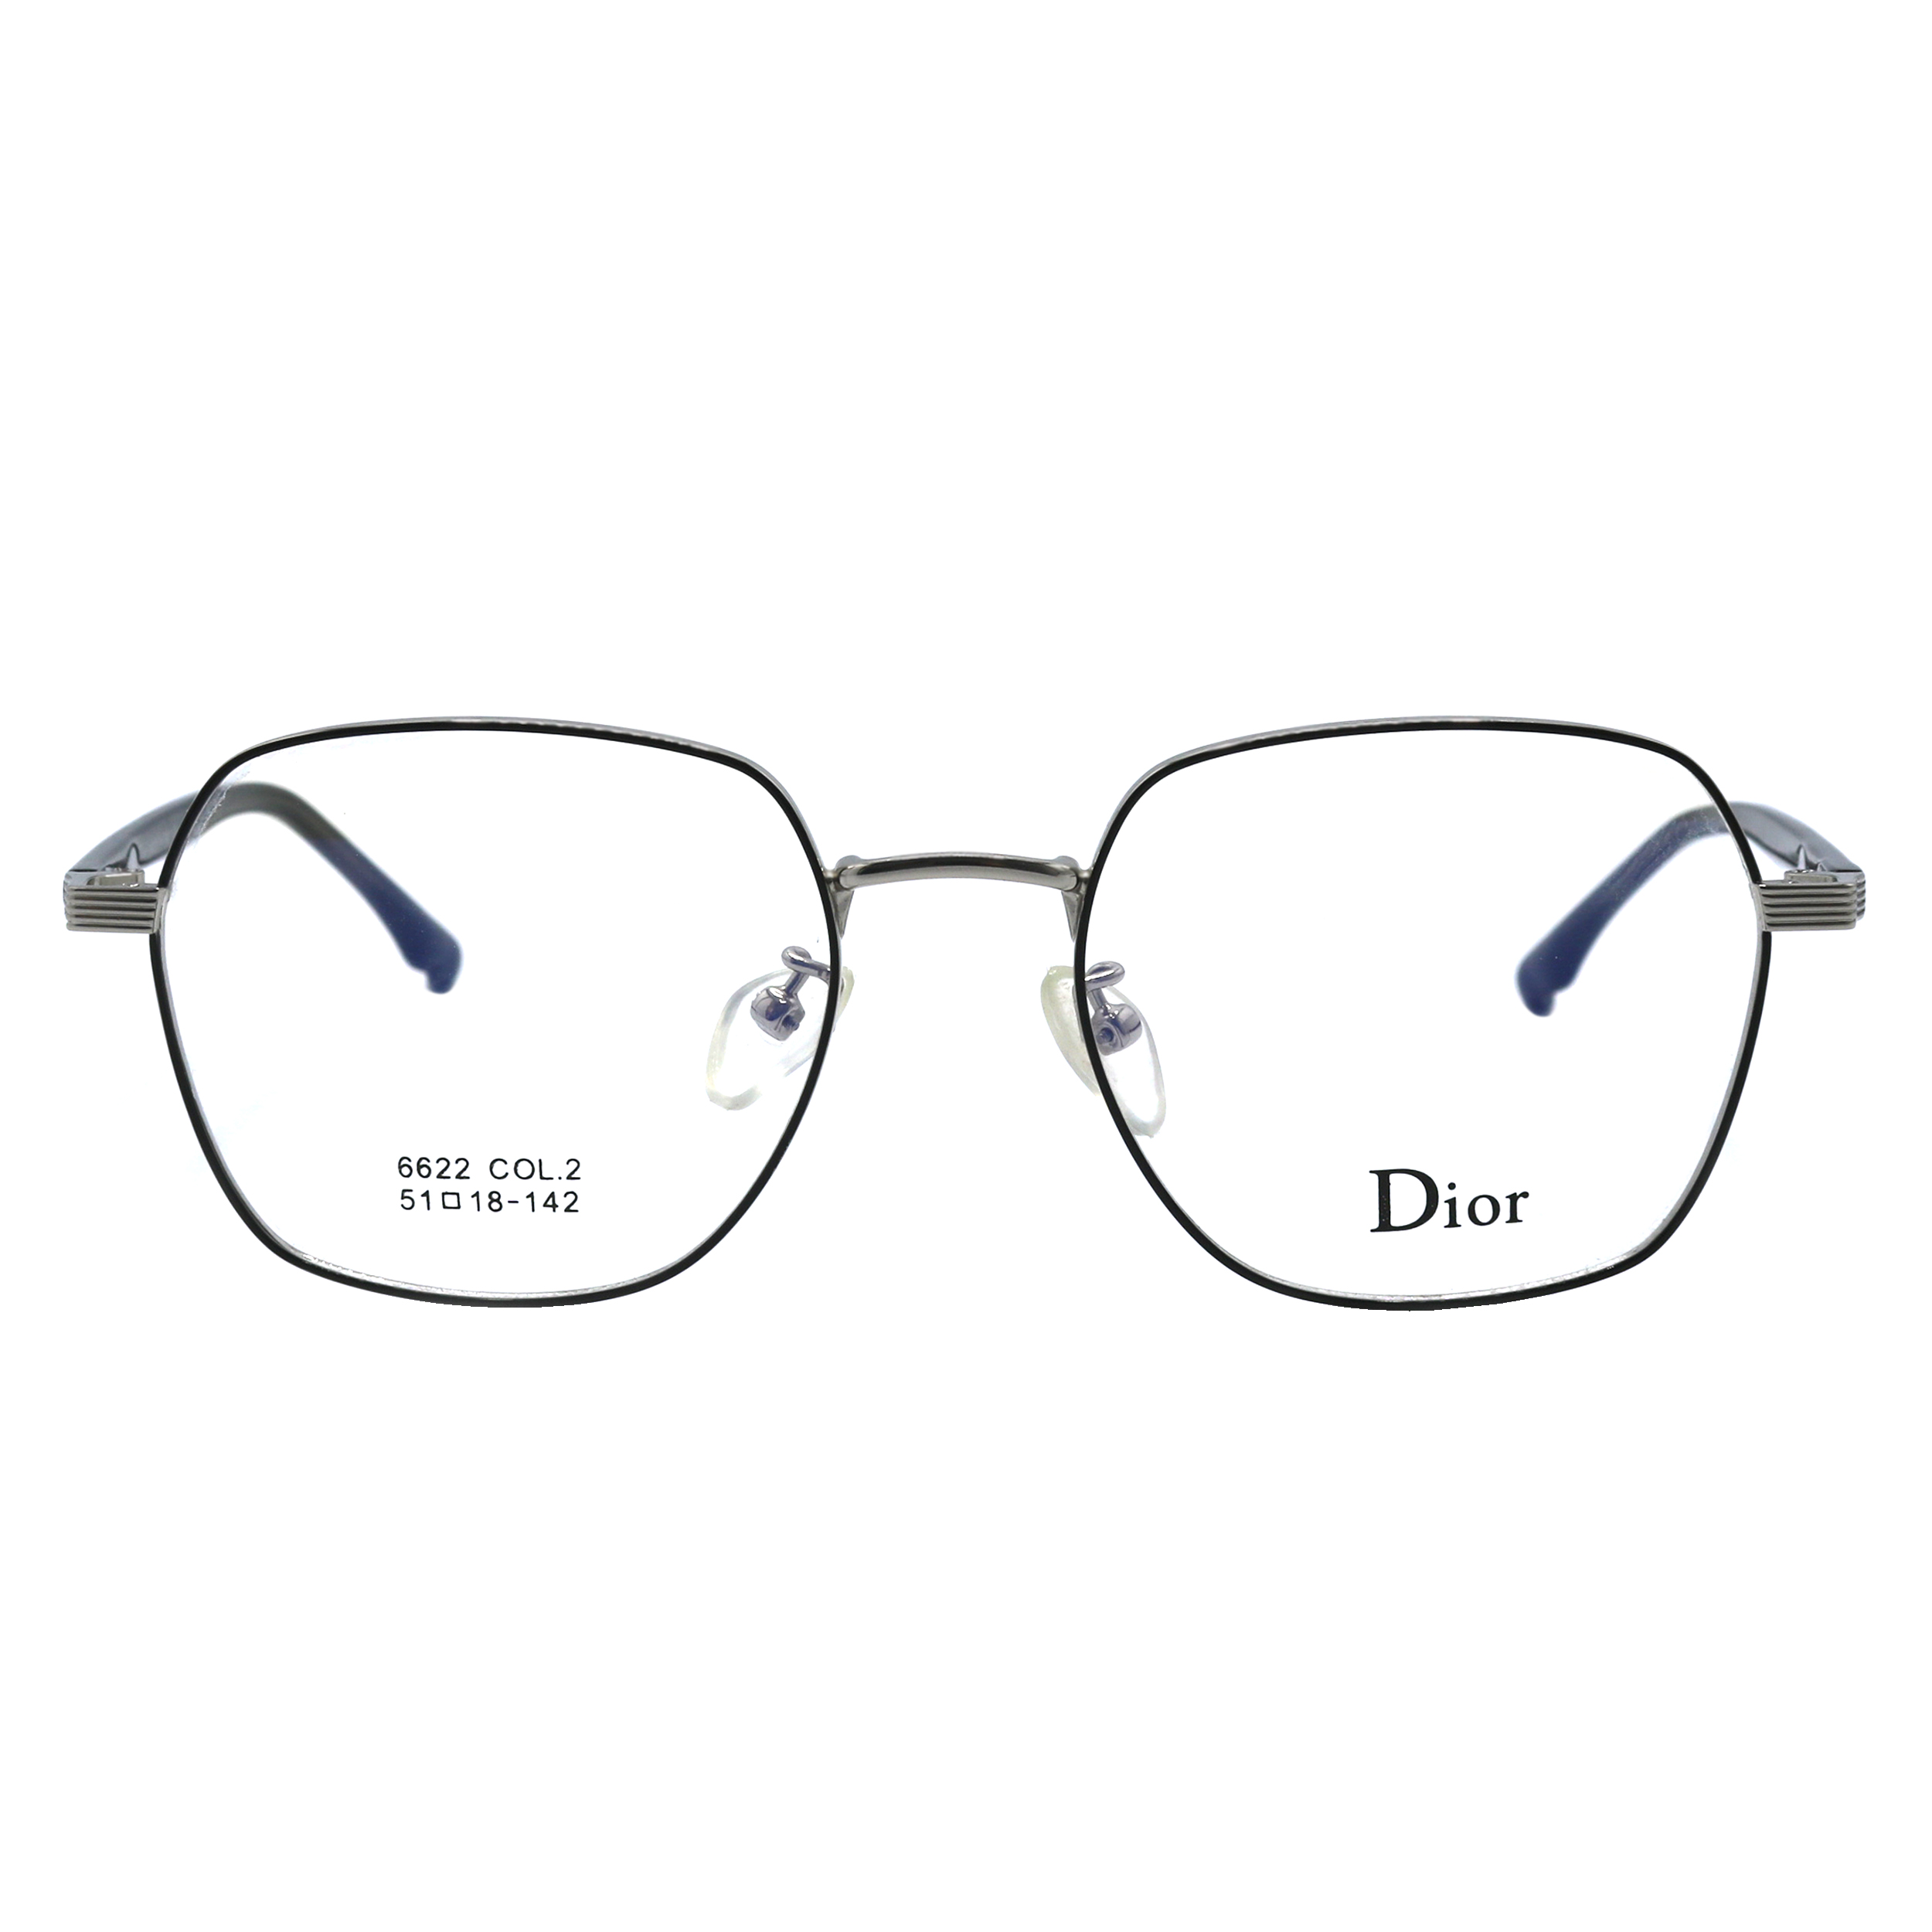 فریم عینک طبی دیور مدل 6622